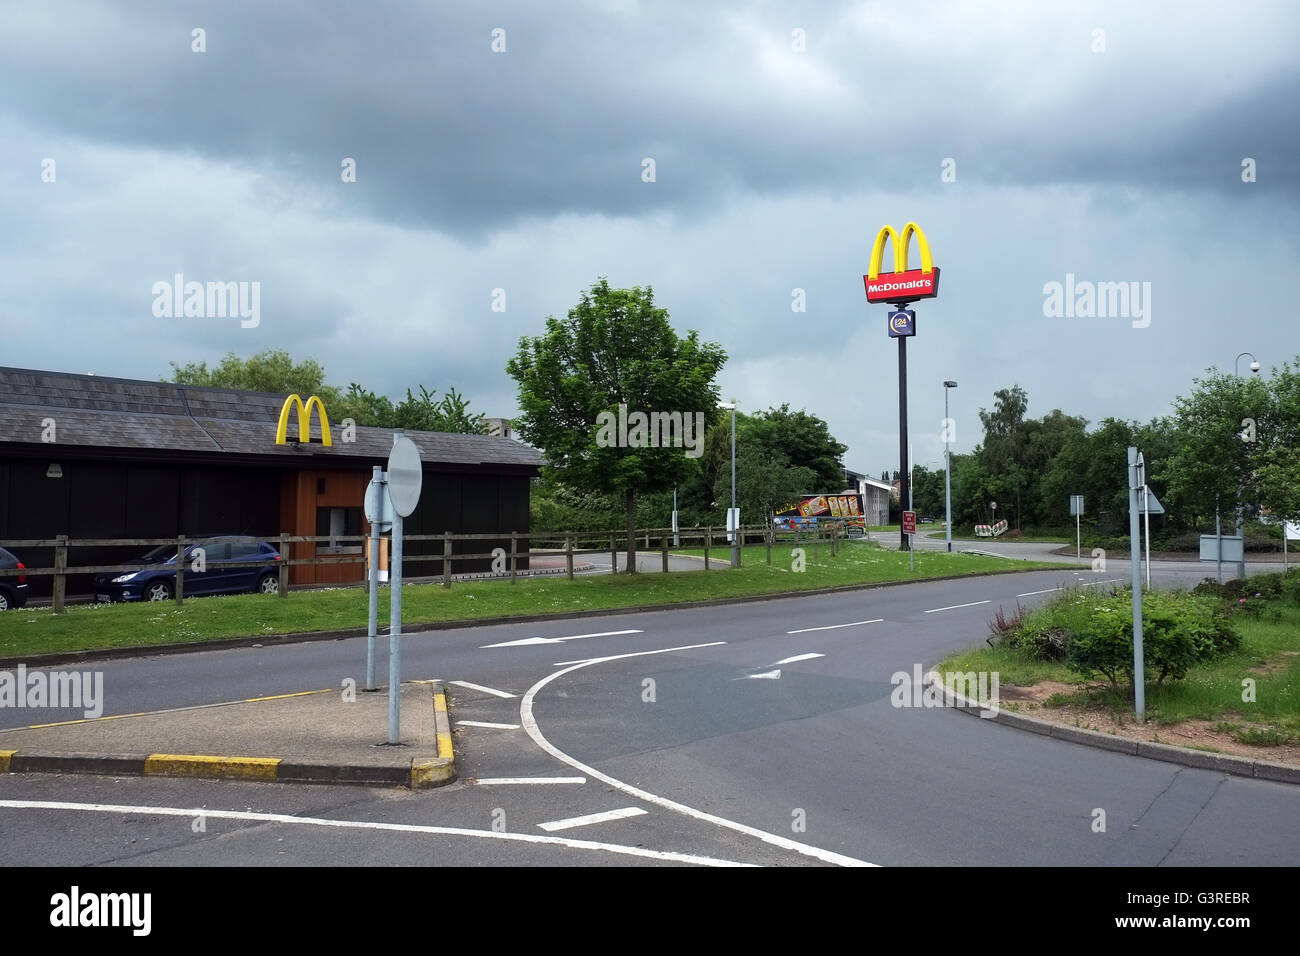 McDonalds drive via fast food restaurant à Corby, England, UK. Banque D'Images